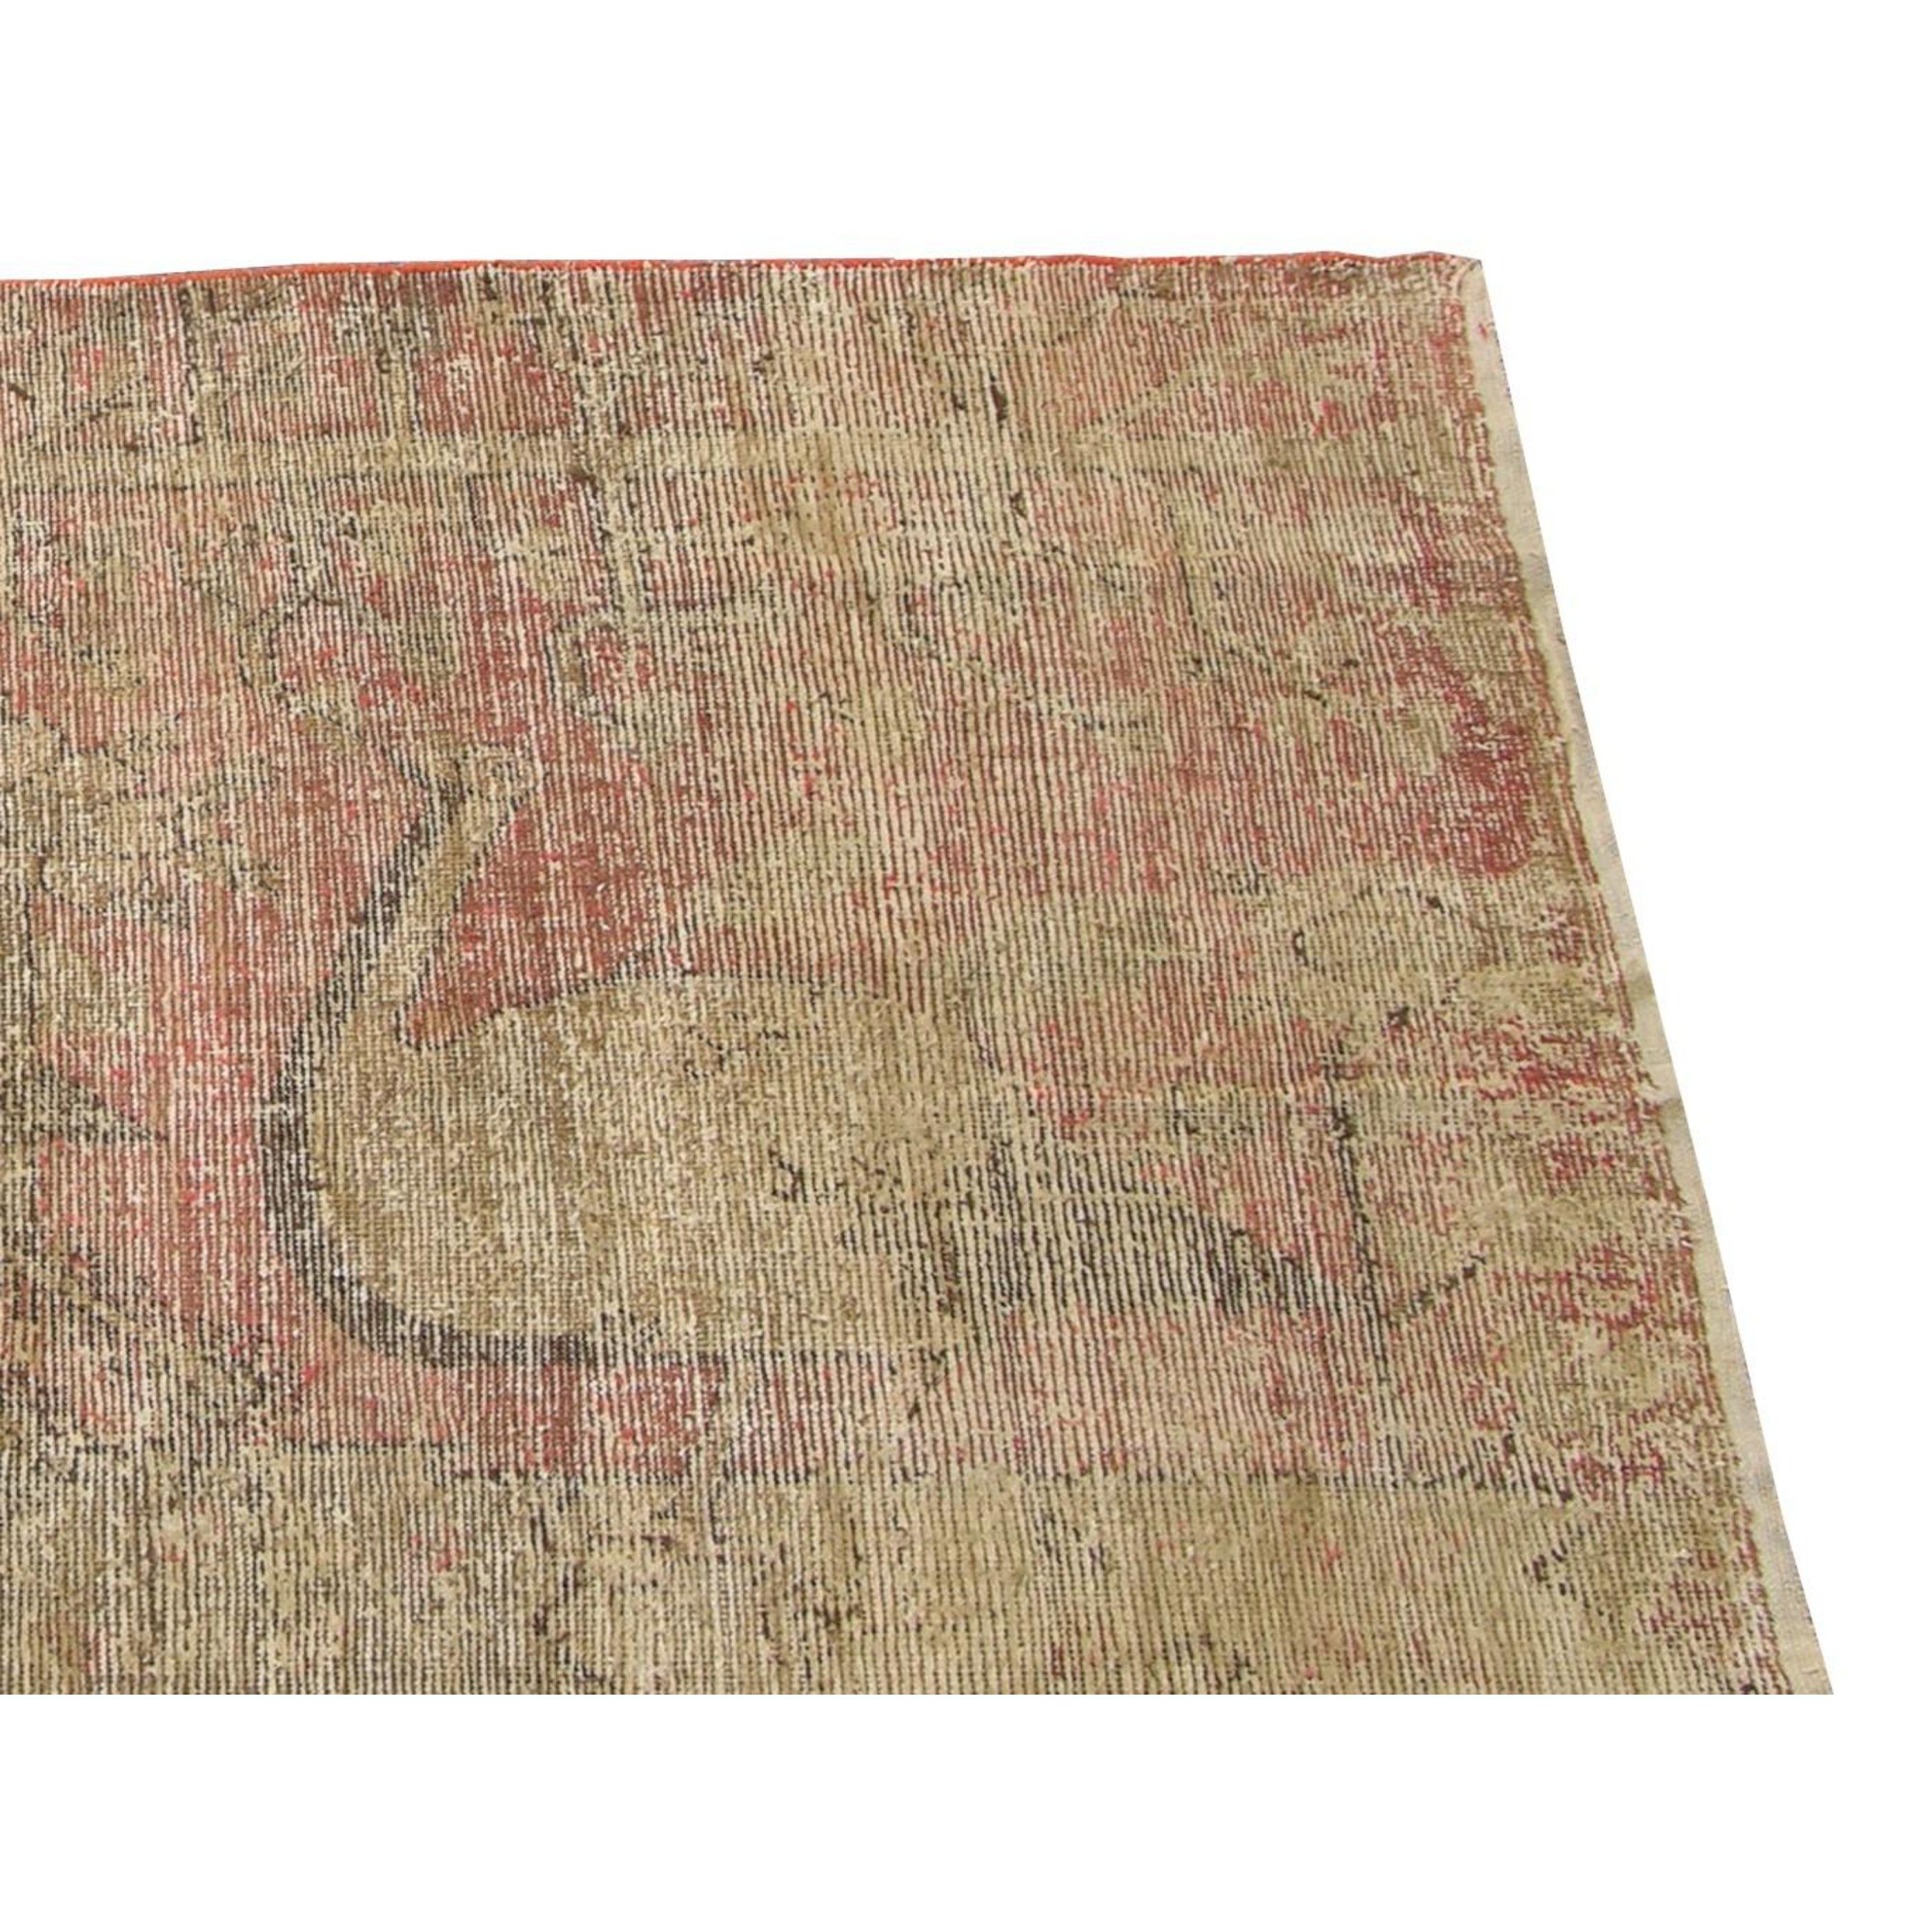 Nous proposons à la vente un ancien tapis ouzbek Samakhand, datant des années 1900.